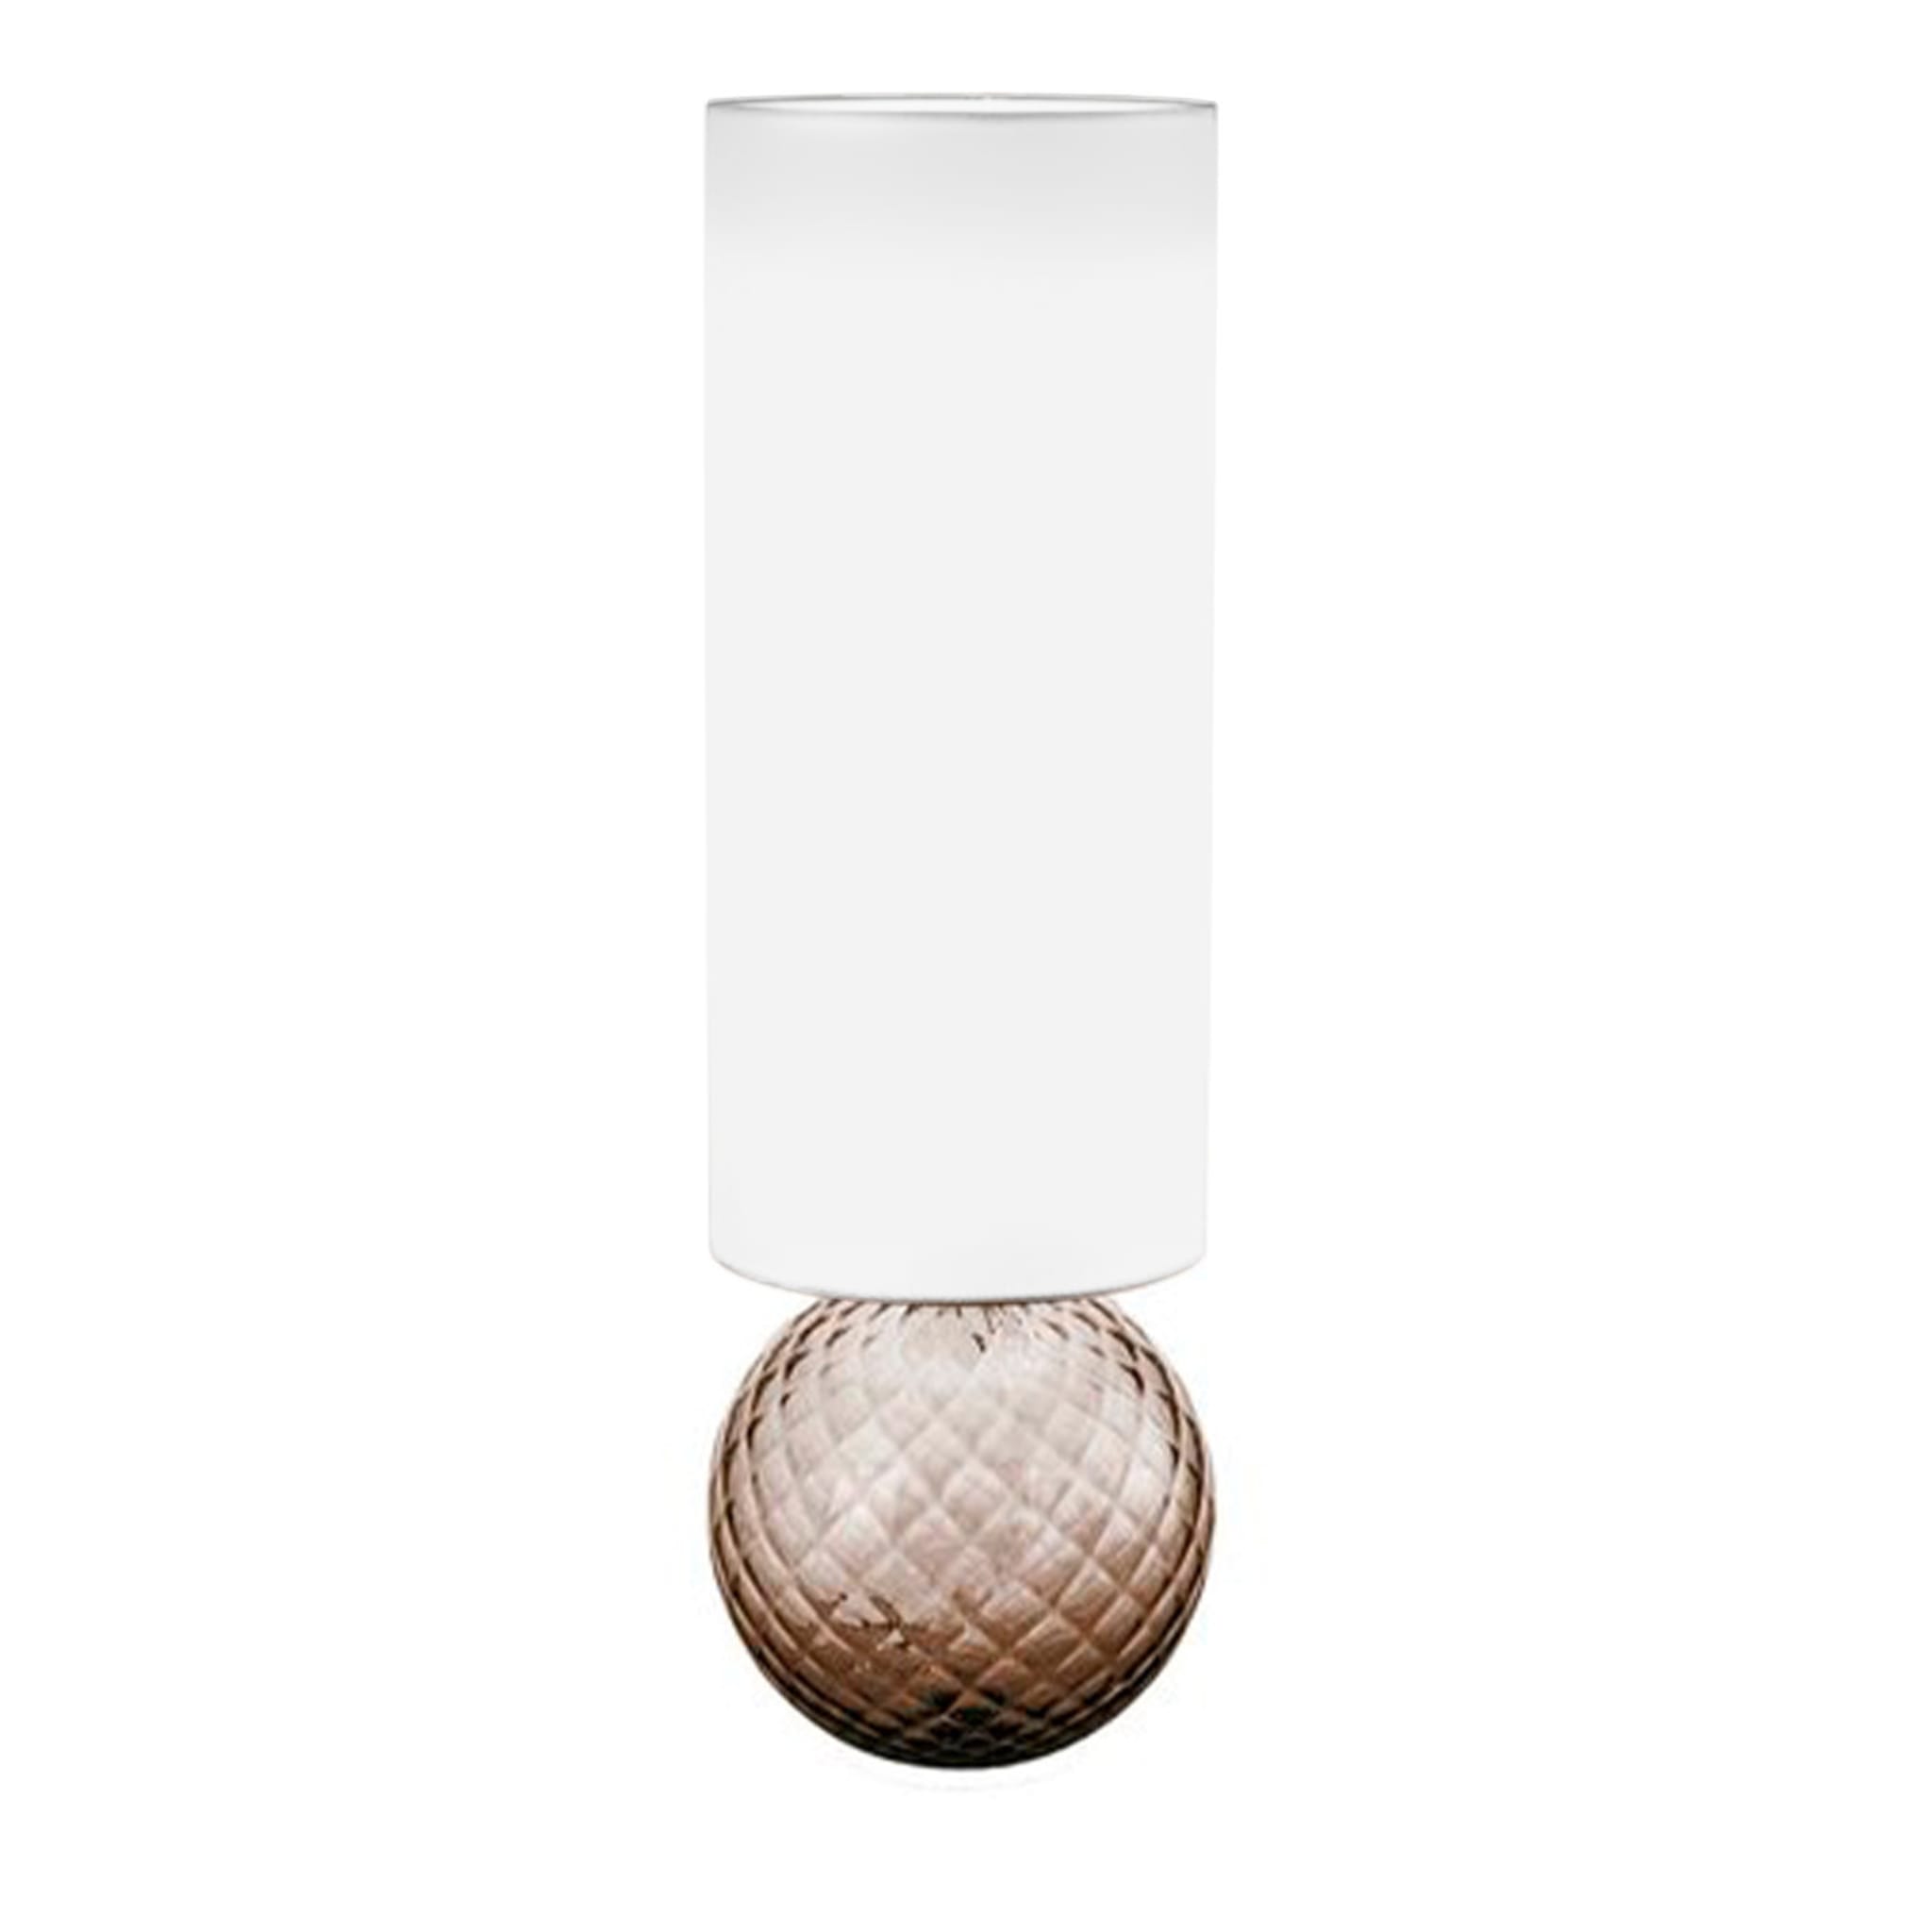 Balloton Smoky Table Lamp with Shade - Main view